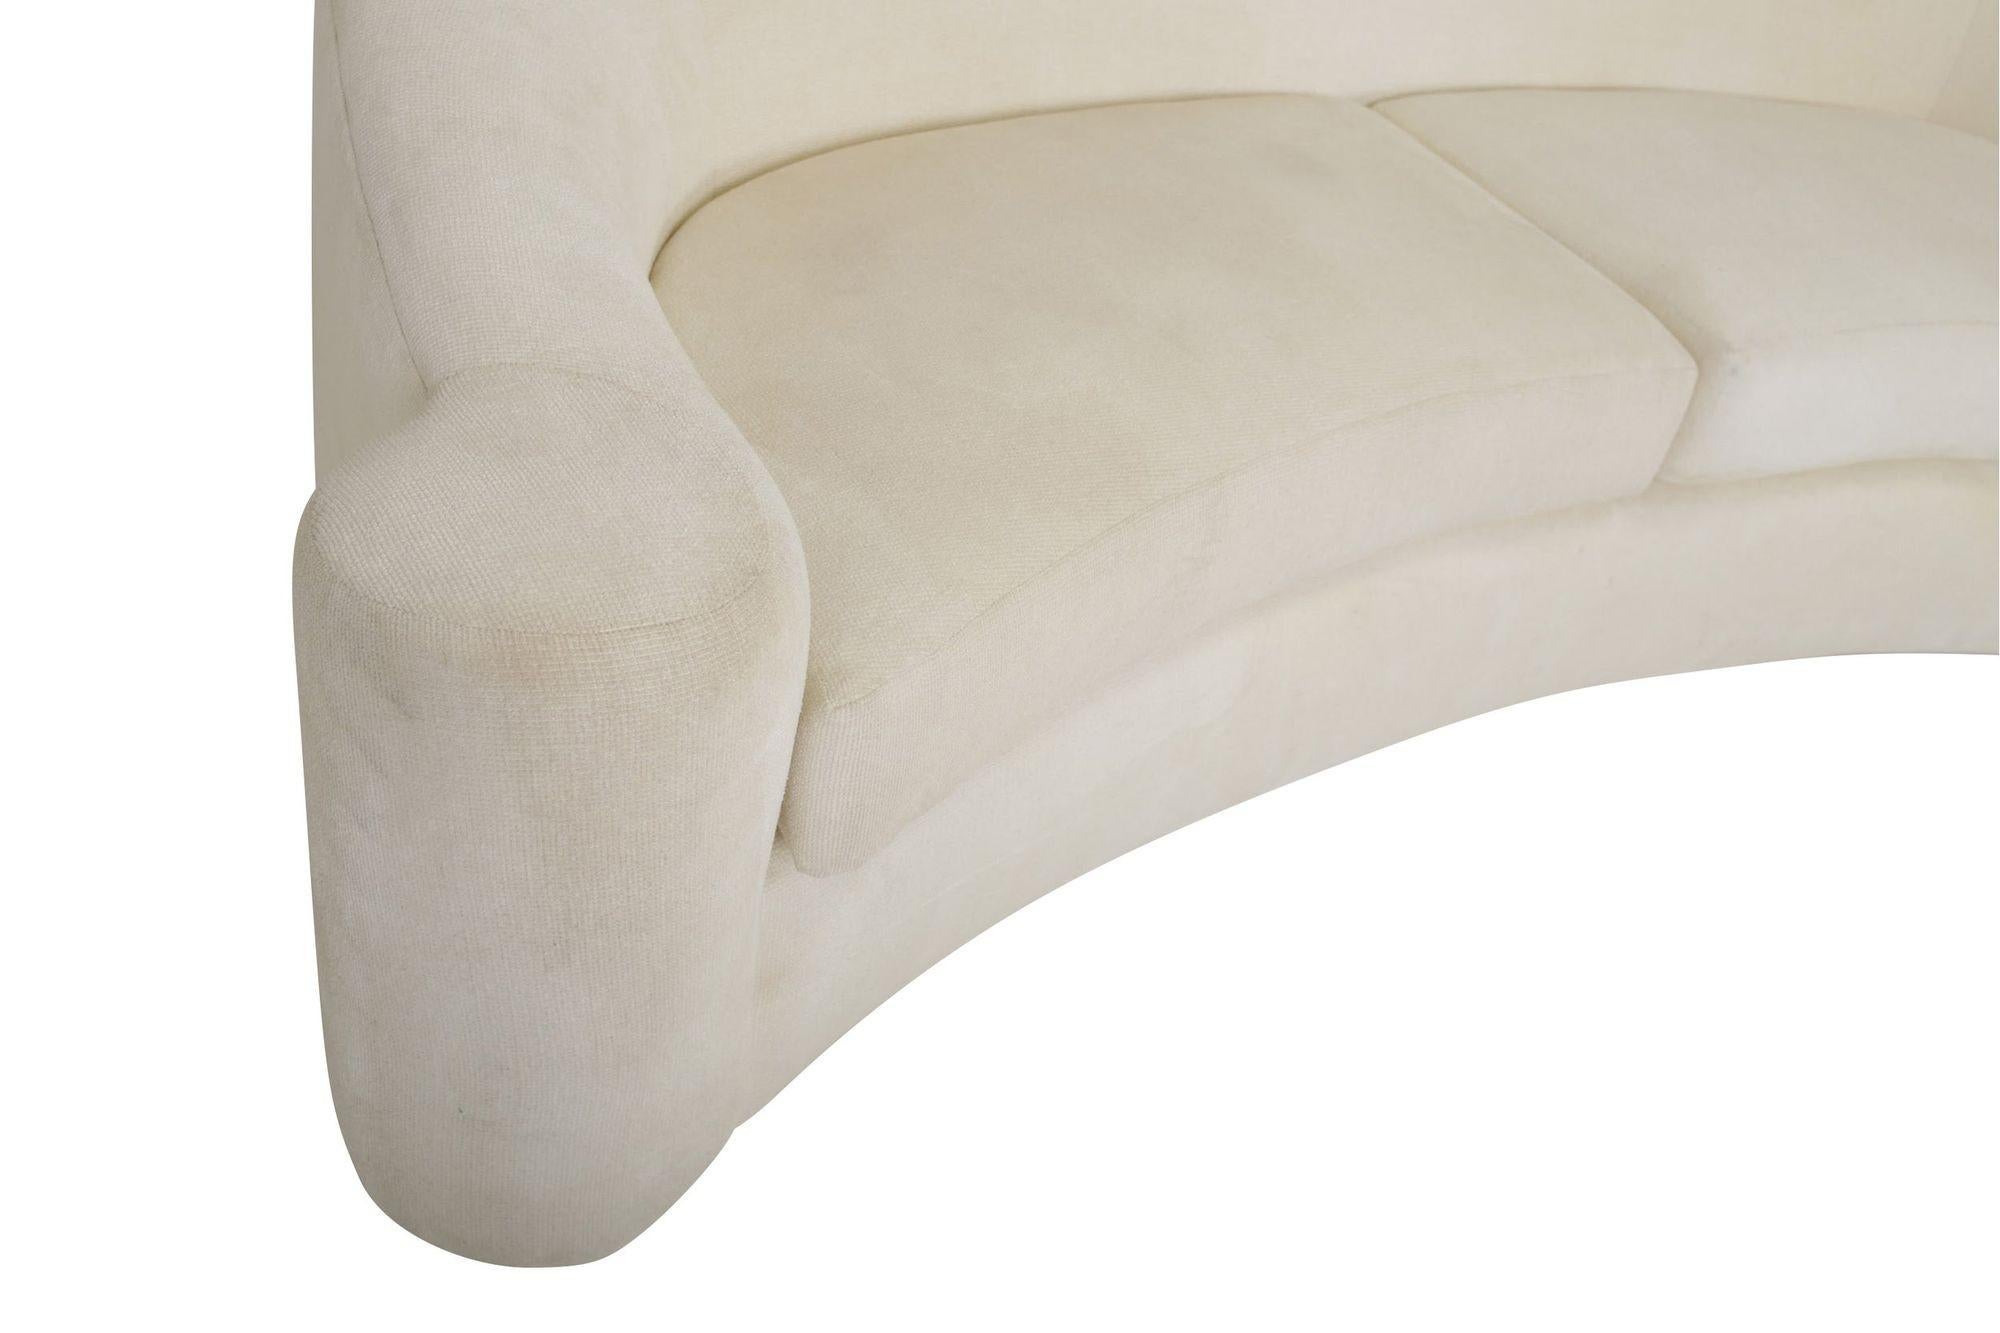 Breitarmiges Sofa, entworfen von Steve Chase für Martin Brattrud im Jahr 1994. Der originale weiße Chenille-Bezug weist Gebrauchsspuren auf.